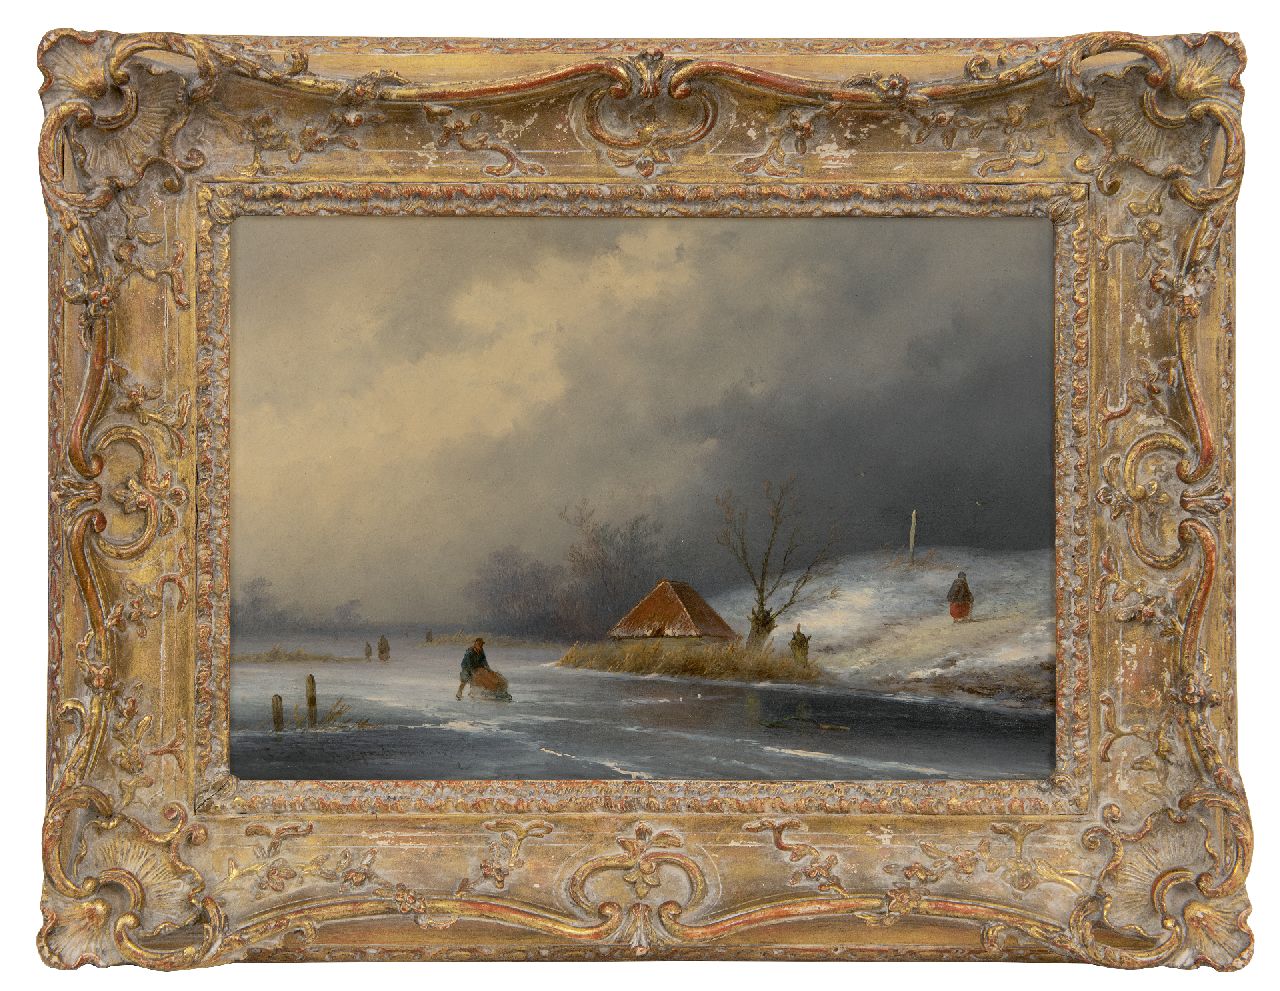 Hoppenbrouwers J.F.  | Johannes Franciscus Hoppenbrouwers | Schilderijen te koop aangeboden | Figuren op het ijs bij naderende sneeuwstorm, olieverf op paneel 22,3 x 31,5 cm, gesigneerd linksonder